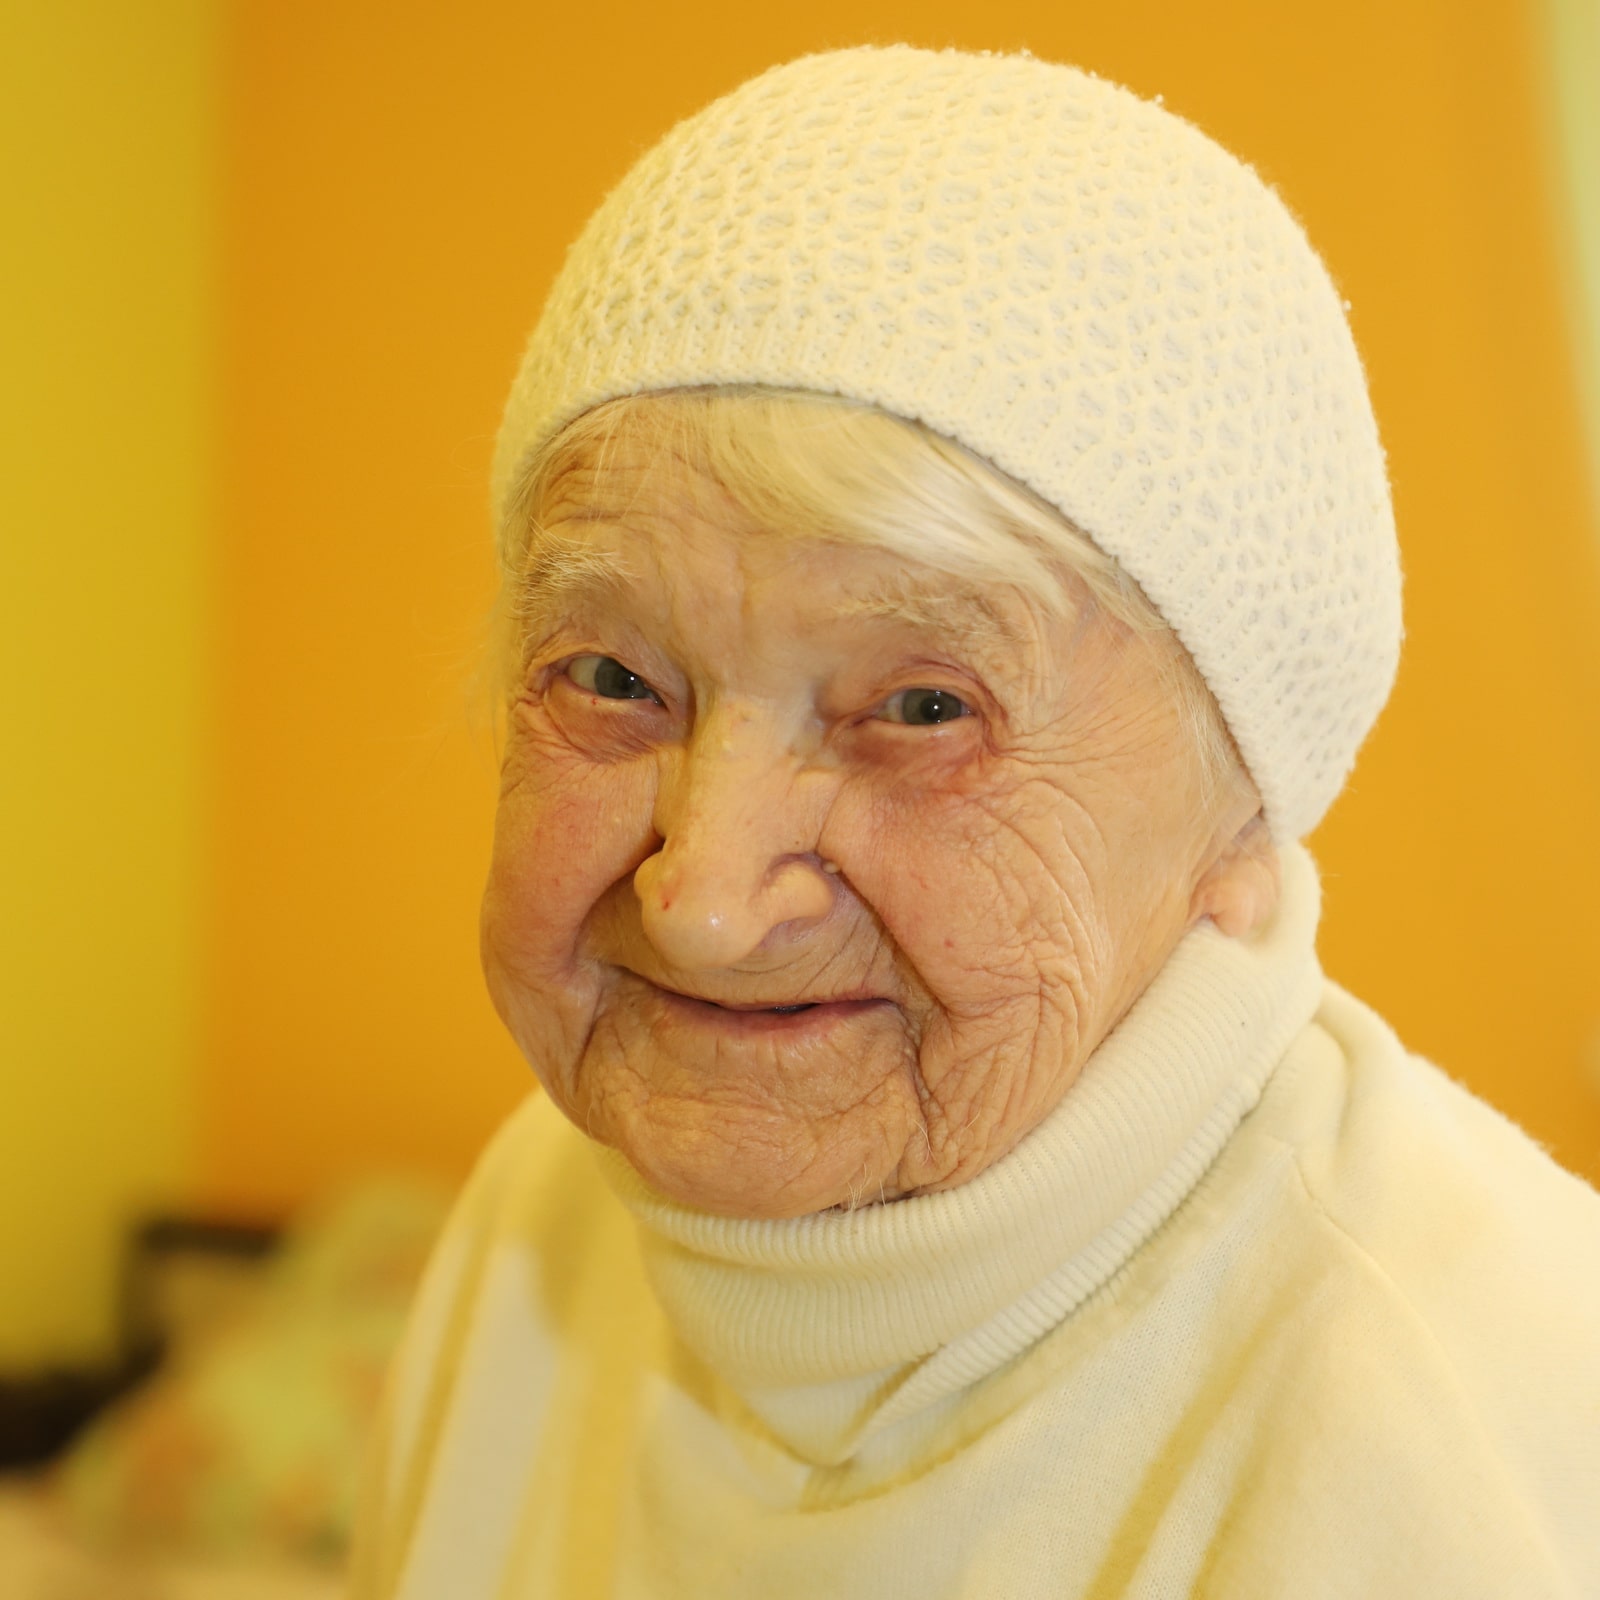 Пансионат для пожилых людей "Долгожители" в Волжском обеспечит вашему престарелому родственнику комфортное проживание, квалифицированный уход и приятное времяпровождение среди сверстников. Мы работаем для того, чтобы продлить и скрасить жизнь пенсионеров. В интернате для пожилых людей и инвалидов в Волжском проживают престарелые люди, которые нуждаются в круглосуточном уходе и заботе: инвалиды, лежачие больные, пожилые с деменцией, Альцгеймером, одинокие пенсионеры. Команда дома престарелых состоит из сиделок, сестер милосердия, поваров, охраны, которые ежедневно трудятся на благо своих подопечных. Досуг Досуг — это свободное время от приема пищи, гигиенических и профилактических процедур. В это время пожилые люди гуляют на улице, играют в настольные игры, читают, смотрят телевизор, общаются. Команда нашего дома для пожилых людей организовывает праздники, дни рождения, соревнования, конкурсы среди своих подопечных. Они охотно принимают участие во всех мероприятиях. Если по какой-то причине пенсионеры отказываются от участия, мы не настаиваем. Мы уважаем пожелания подопечных и в первую очередь заботимся об их моральном состоянии и душевном спокойствии. Наши услуги Для того чтобы оказать помощь пожилому человеку, нужно время, опыт, терпение и желание. Все эти качества есть у коллектива пансионата для пожилых людей "Долгожители" в Волжском.  Сиделки круглосуточно ухаживают за пенсионерами, контролируют прием медикаментов и пищи. Для лежачих больных два раза в день проводиться противопролежневая профилактика. Пожилым с деменцией оказывается психологическая помощь. Сестры милосердия помогают таким людям бороться с раздражительностью, тревожностью, агрессией. Правильно организованный распорядок дня и досуг позволяет пожилому человеку справиться с грустными мыслями, депрессией и унынием. Меню в доме-интернате для инвалидов разработано диетологами с учетом заболеваний пенсионеров и возрастных показателей. Меню состоит из трех основных приемов пищи и двух перекусов. В рацион ежедневного питания входят овощи, каши, супы, м